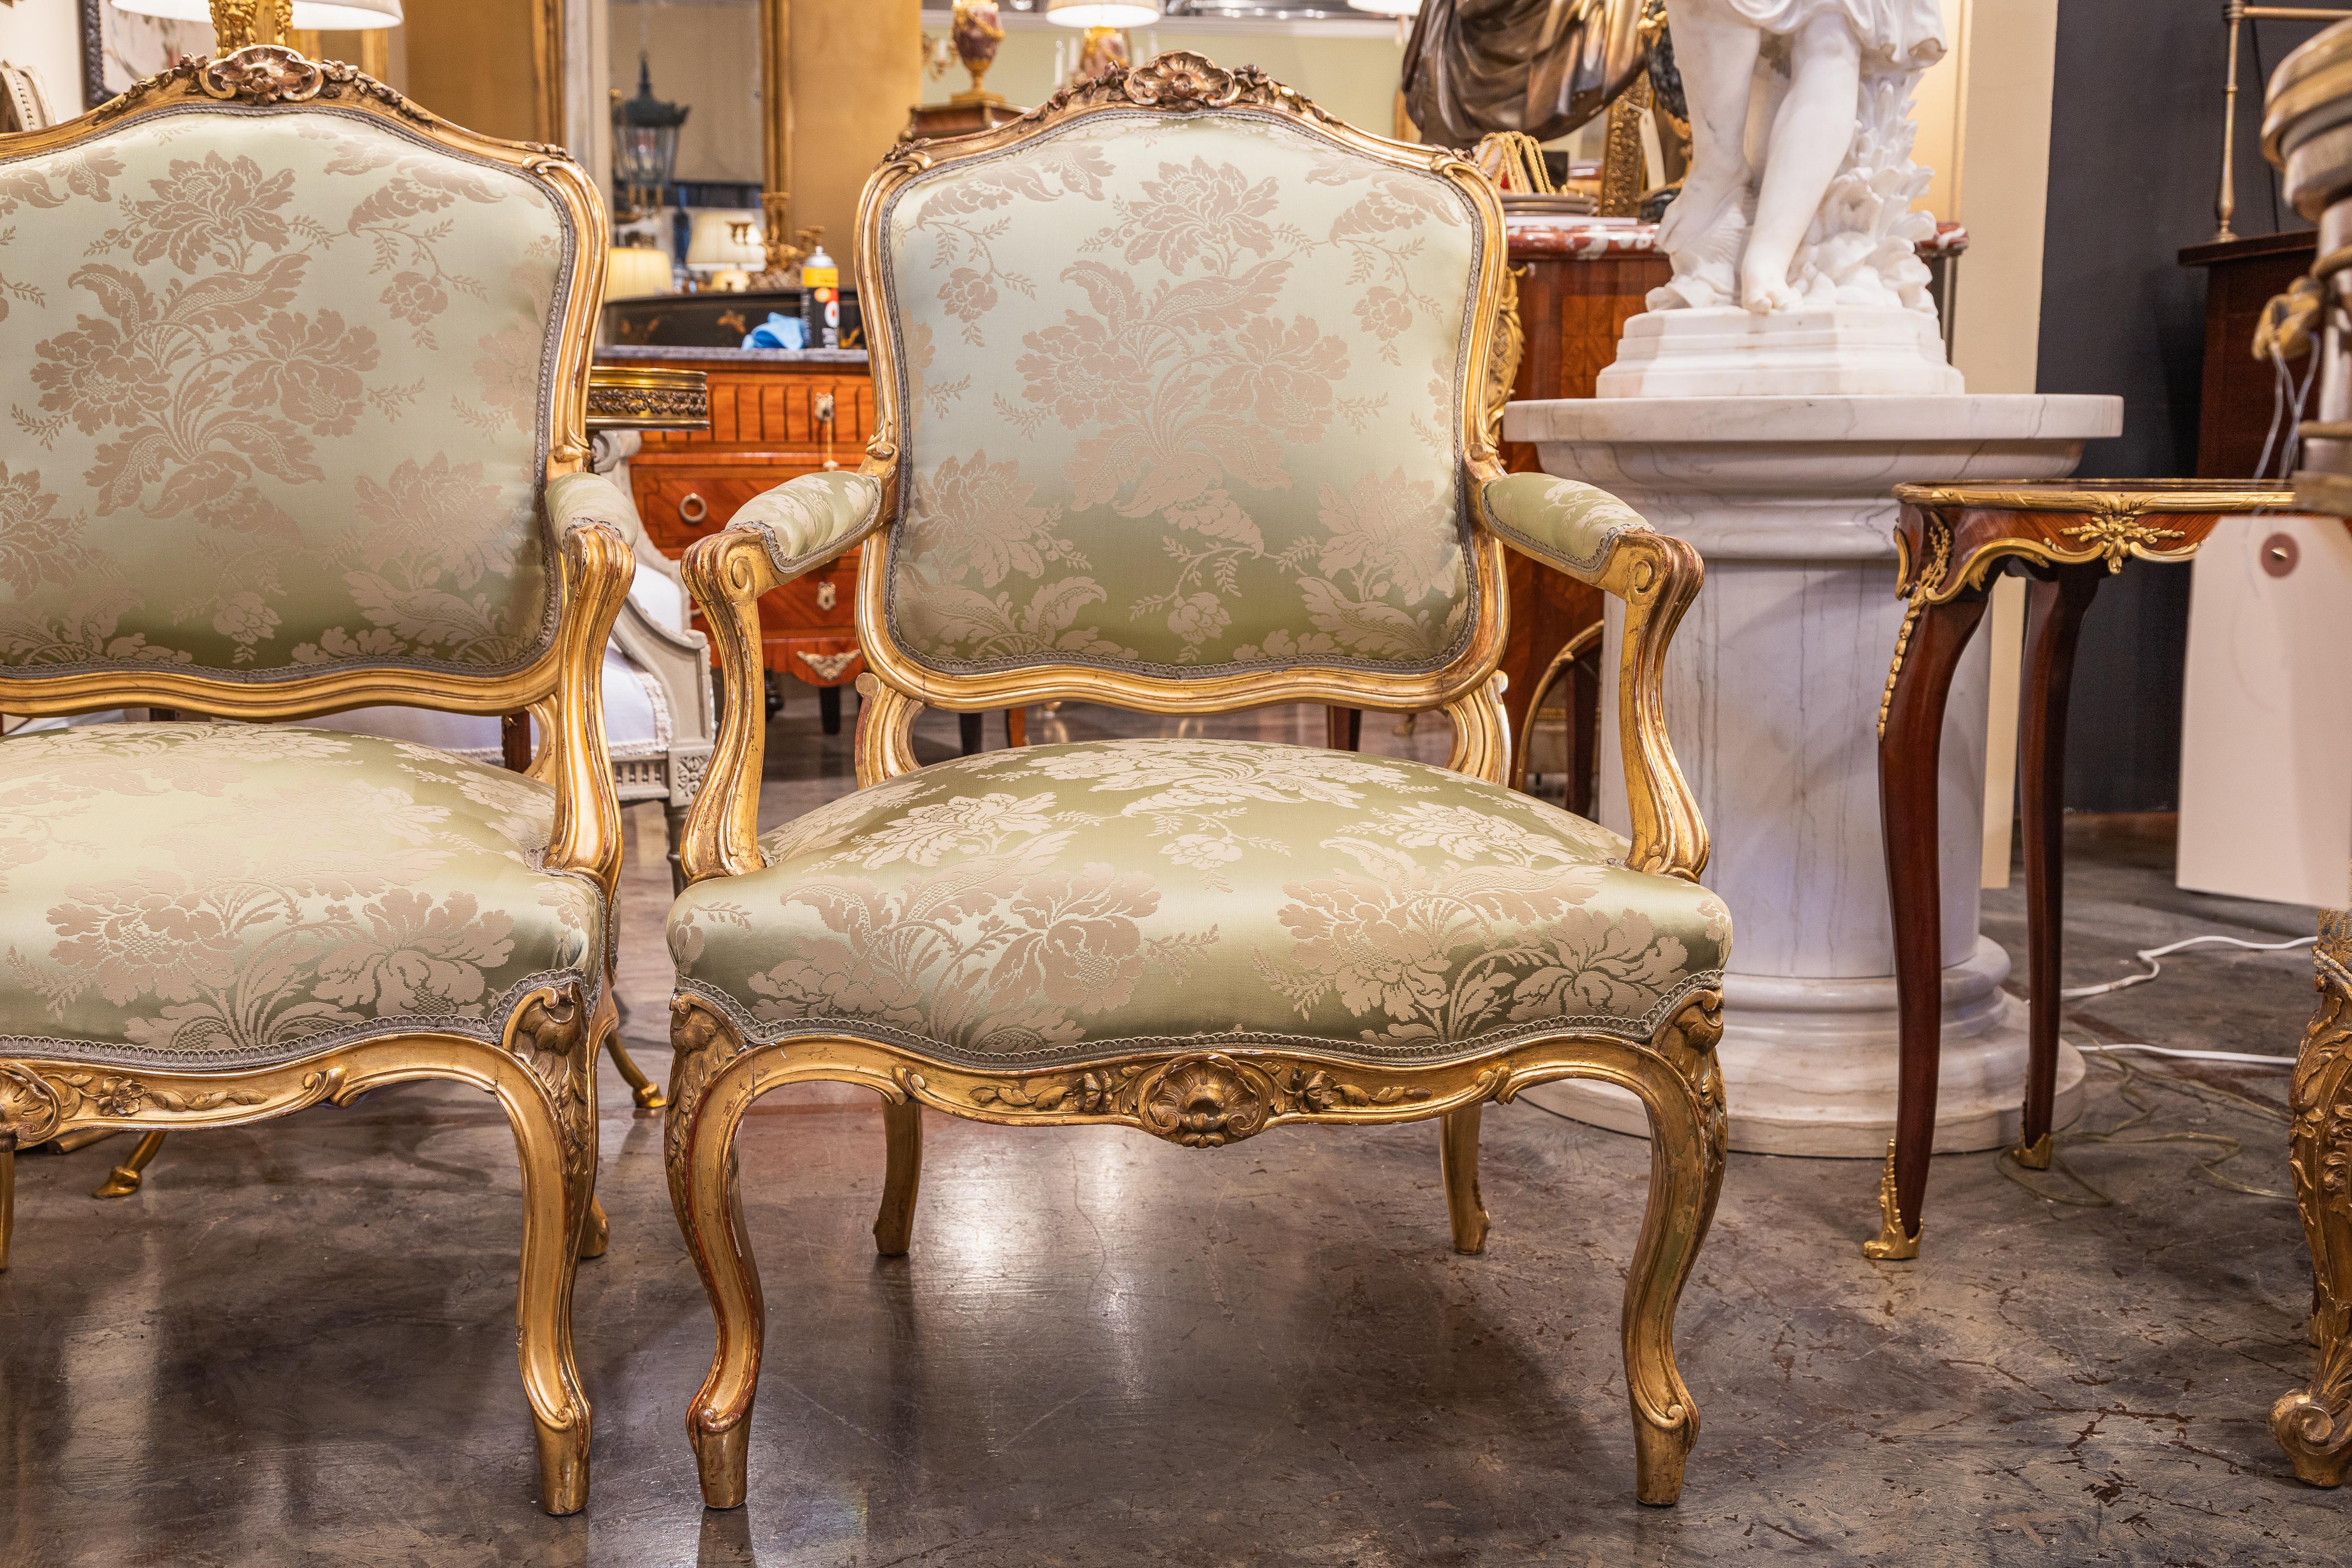 Très belle paire de fauteuils Louis XV du XIXe siècle, sculptés à la main et dorés à l'eau. Recouvert d'une étoffe de soie verte 